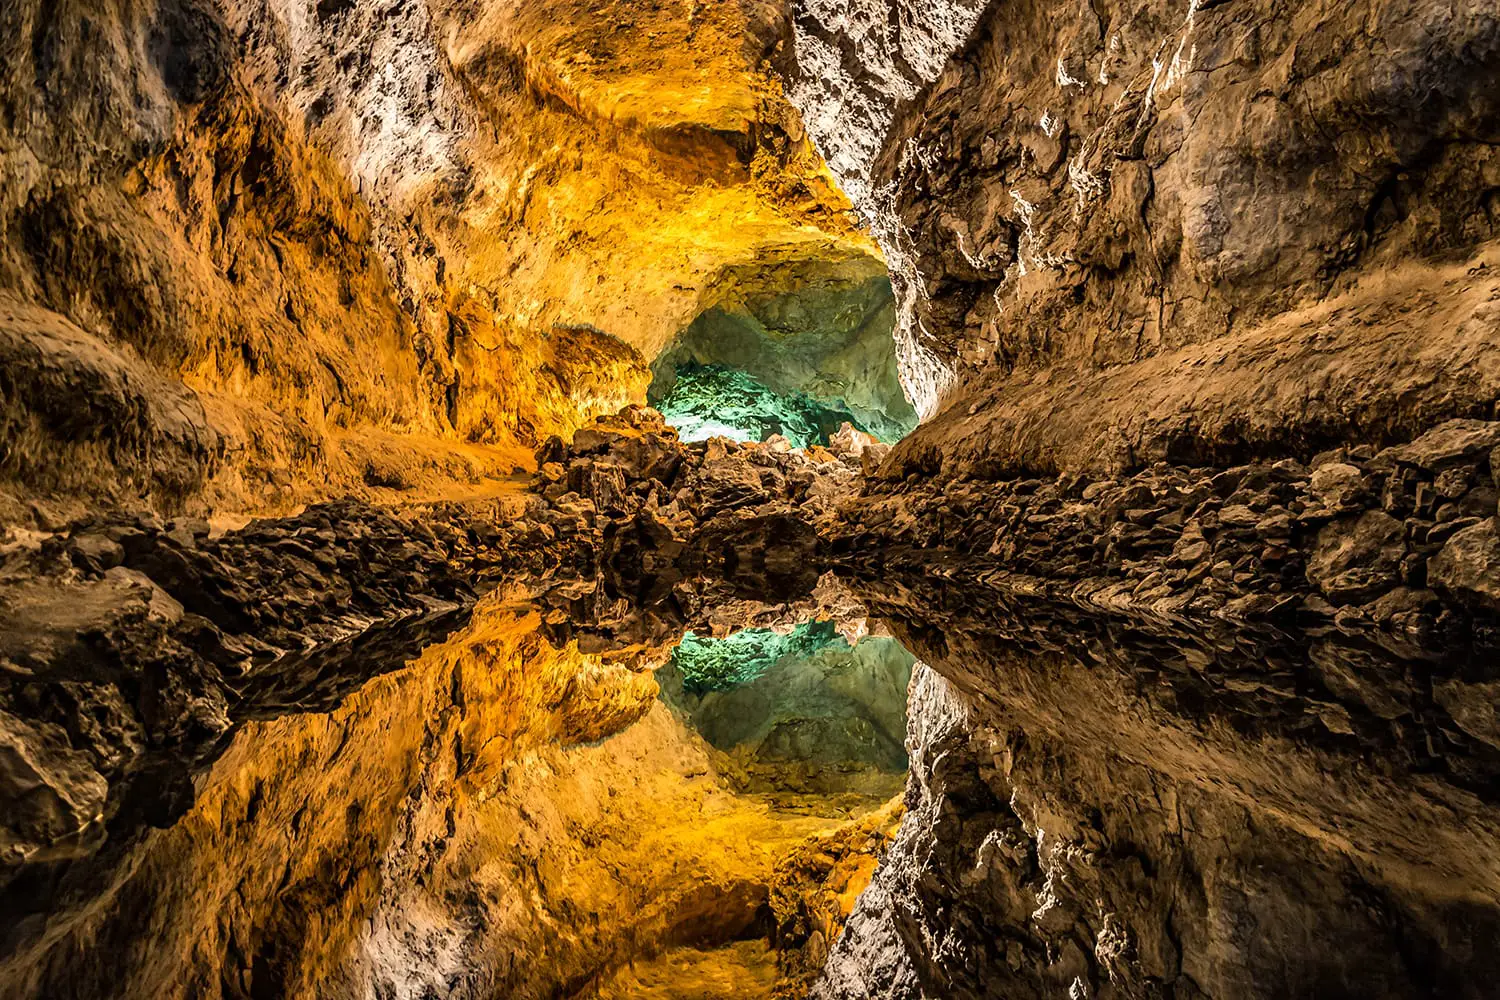 Οπτική ψευδαίσθηση - αντανάκλαση νερού στο Cueva de los Verdes, ένας καταπληκτικός σωλήνας λάβας και τουριστικό αξιοθέατο στο νησί Lanzarote, Ισπανία